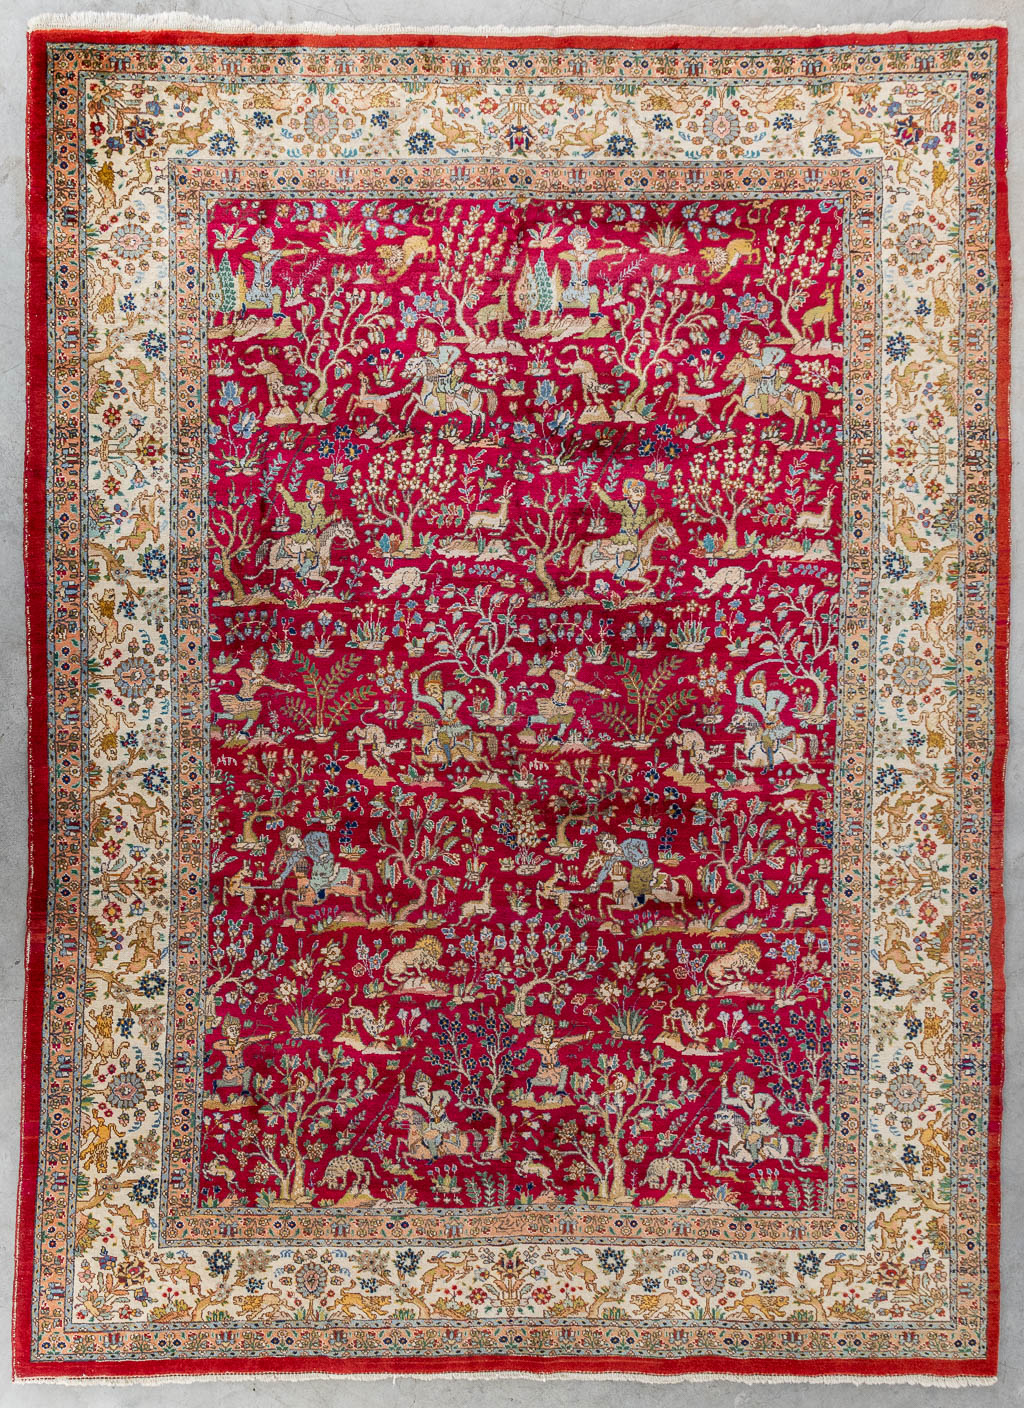 Lot 209 Een groot Oosters en handgeknoopt tapijt met jachtscènes, Tabriz. (L:329 x W:252 cm)